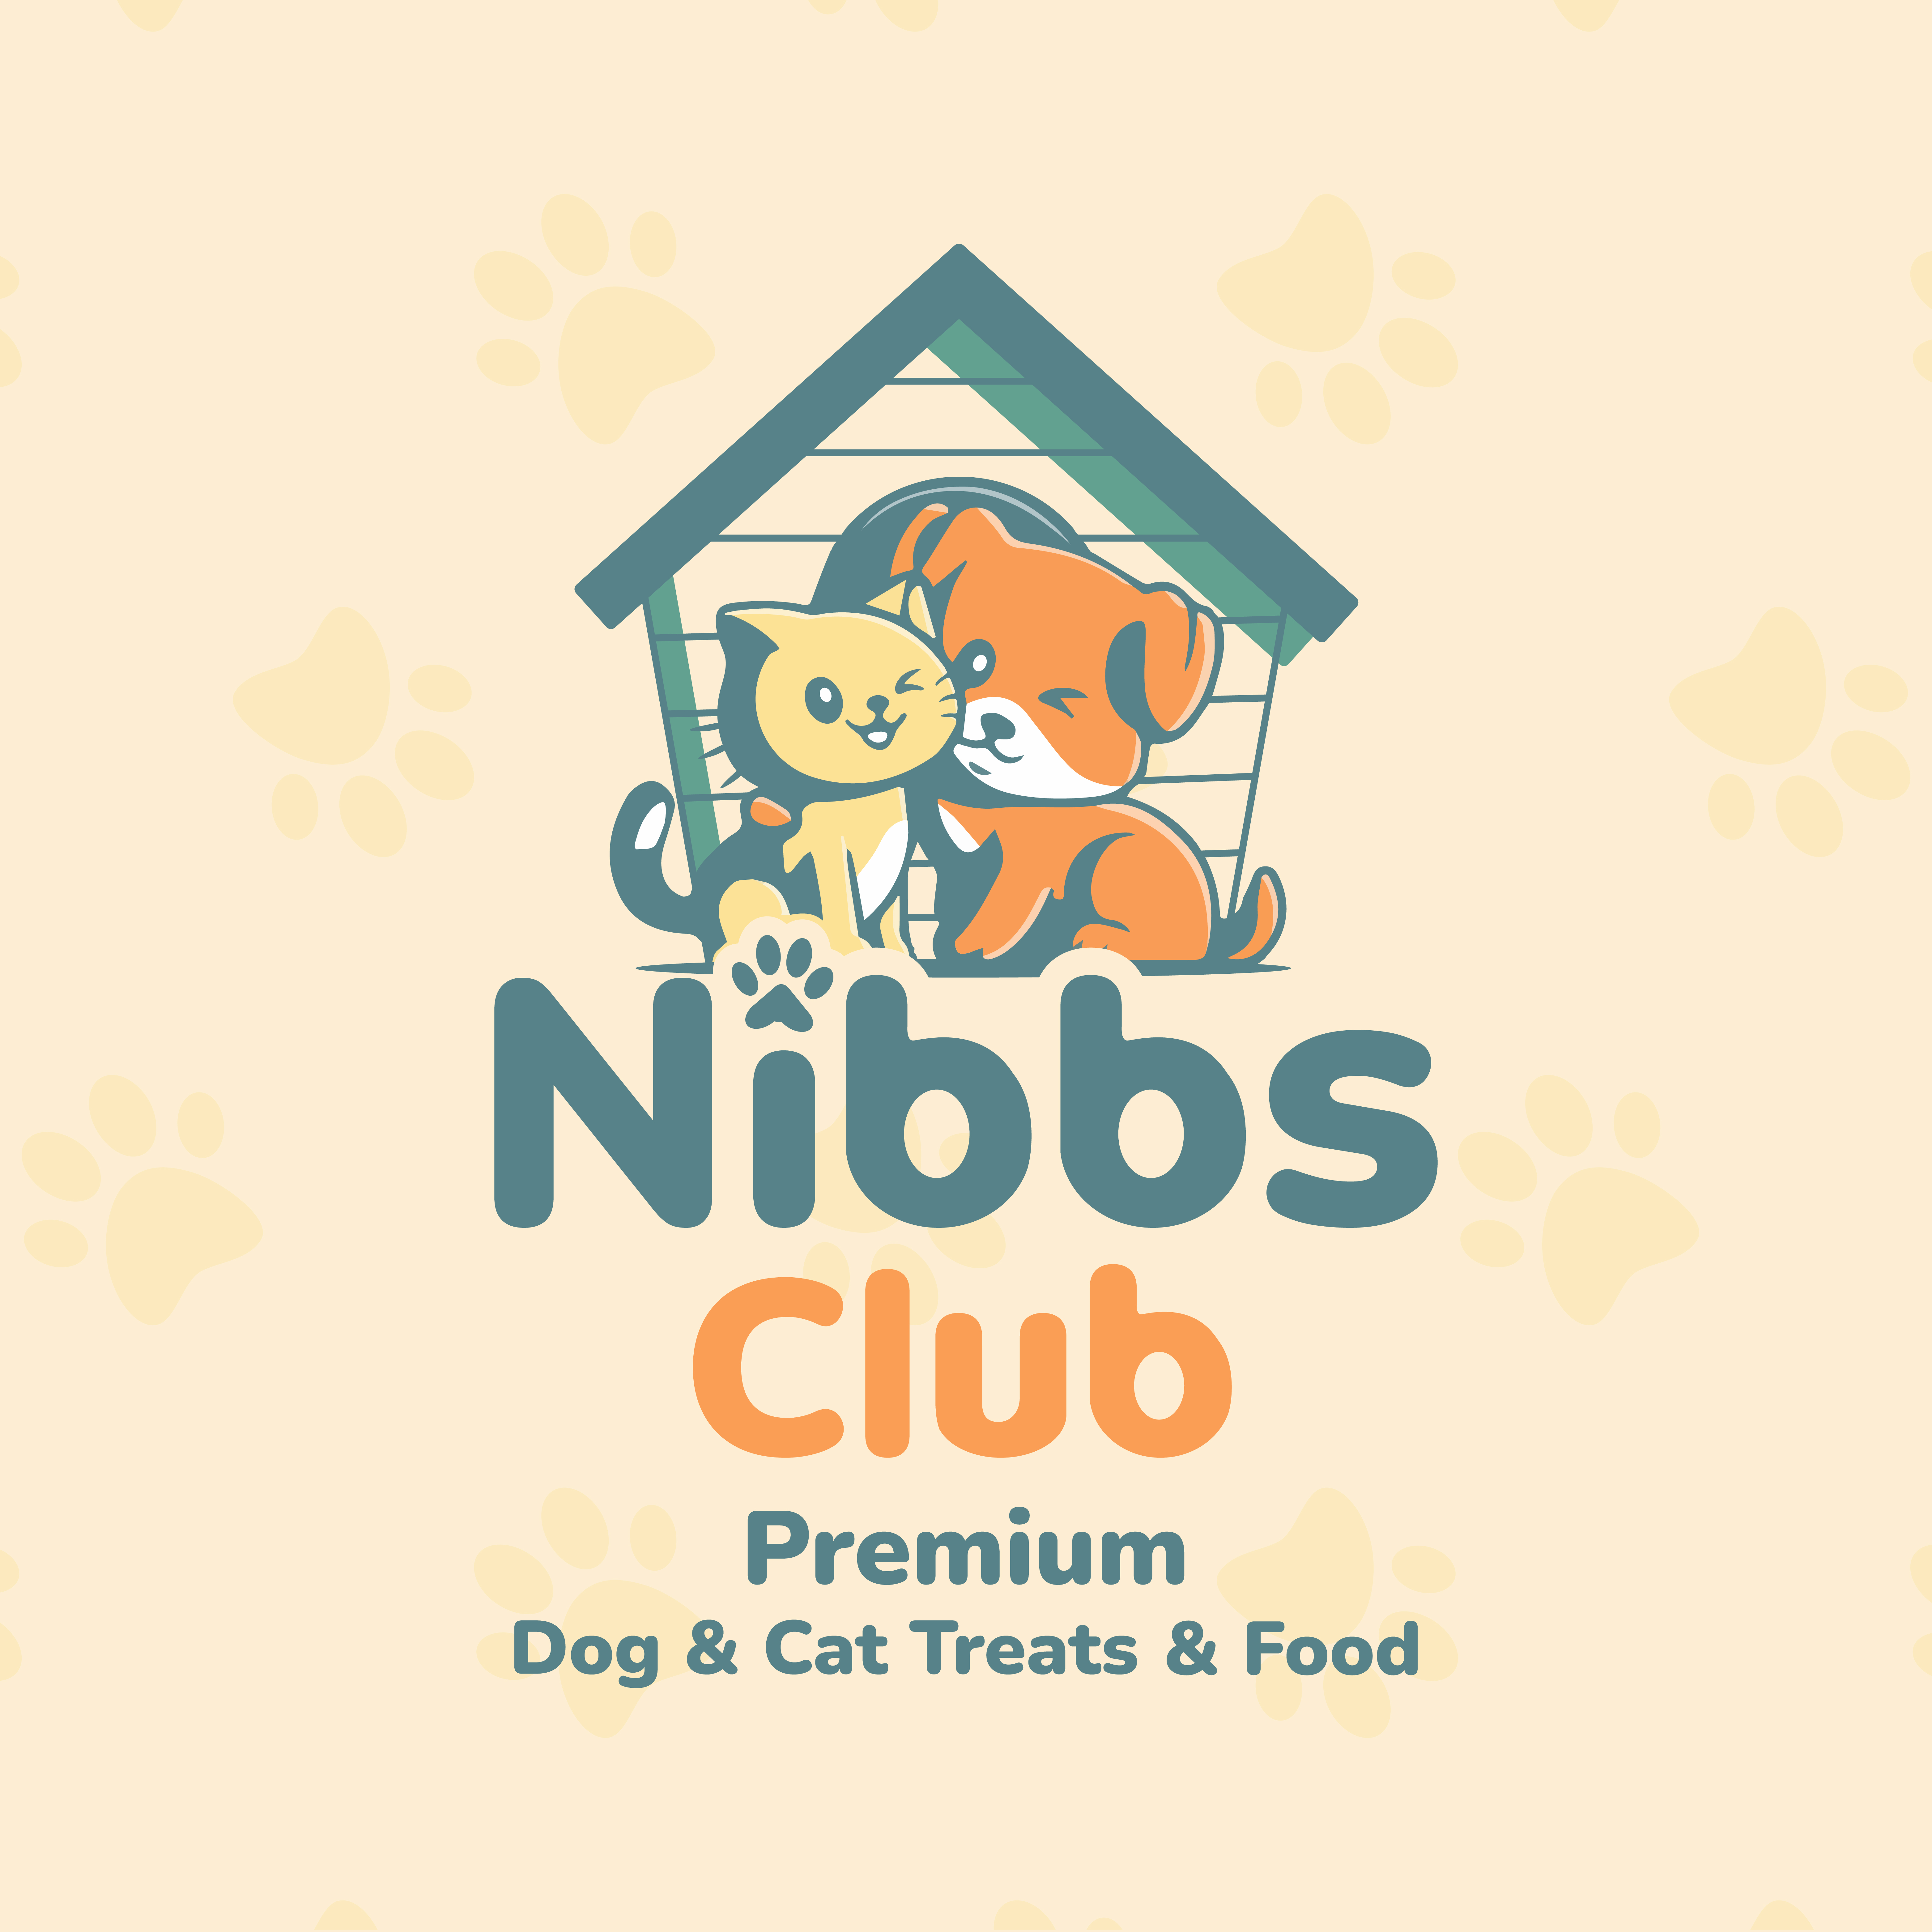 Nibbs Club